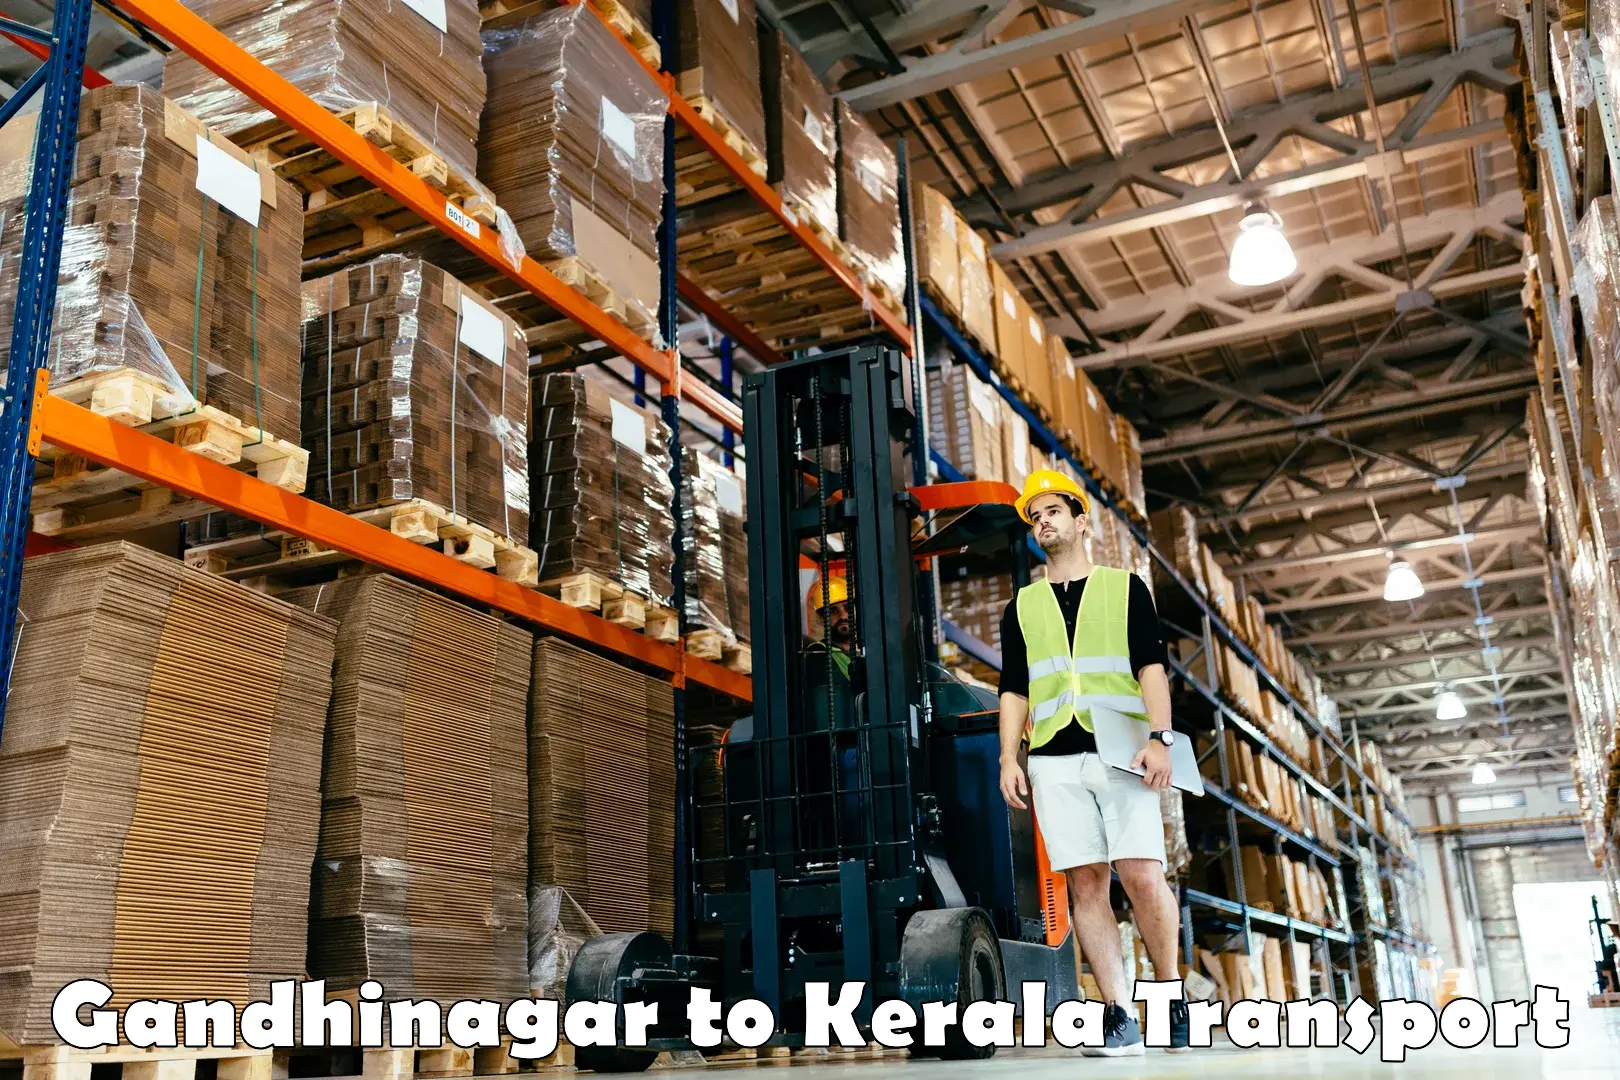 Transport shared services Gandhinagar to Chengannur